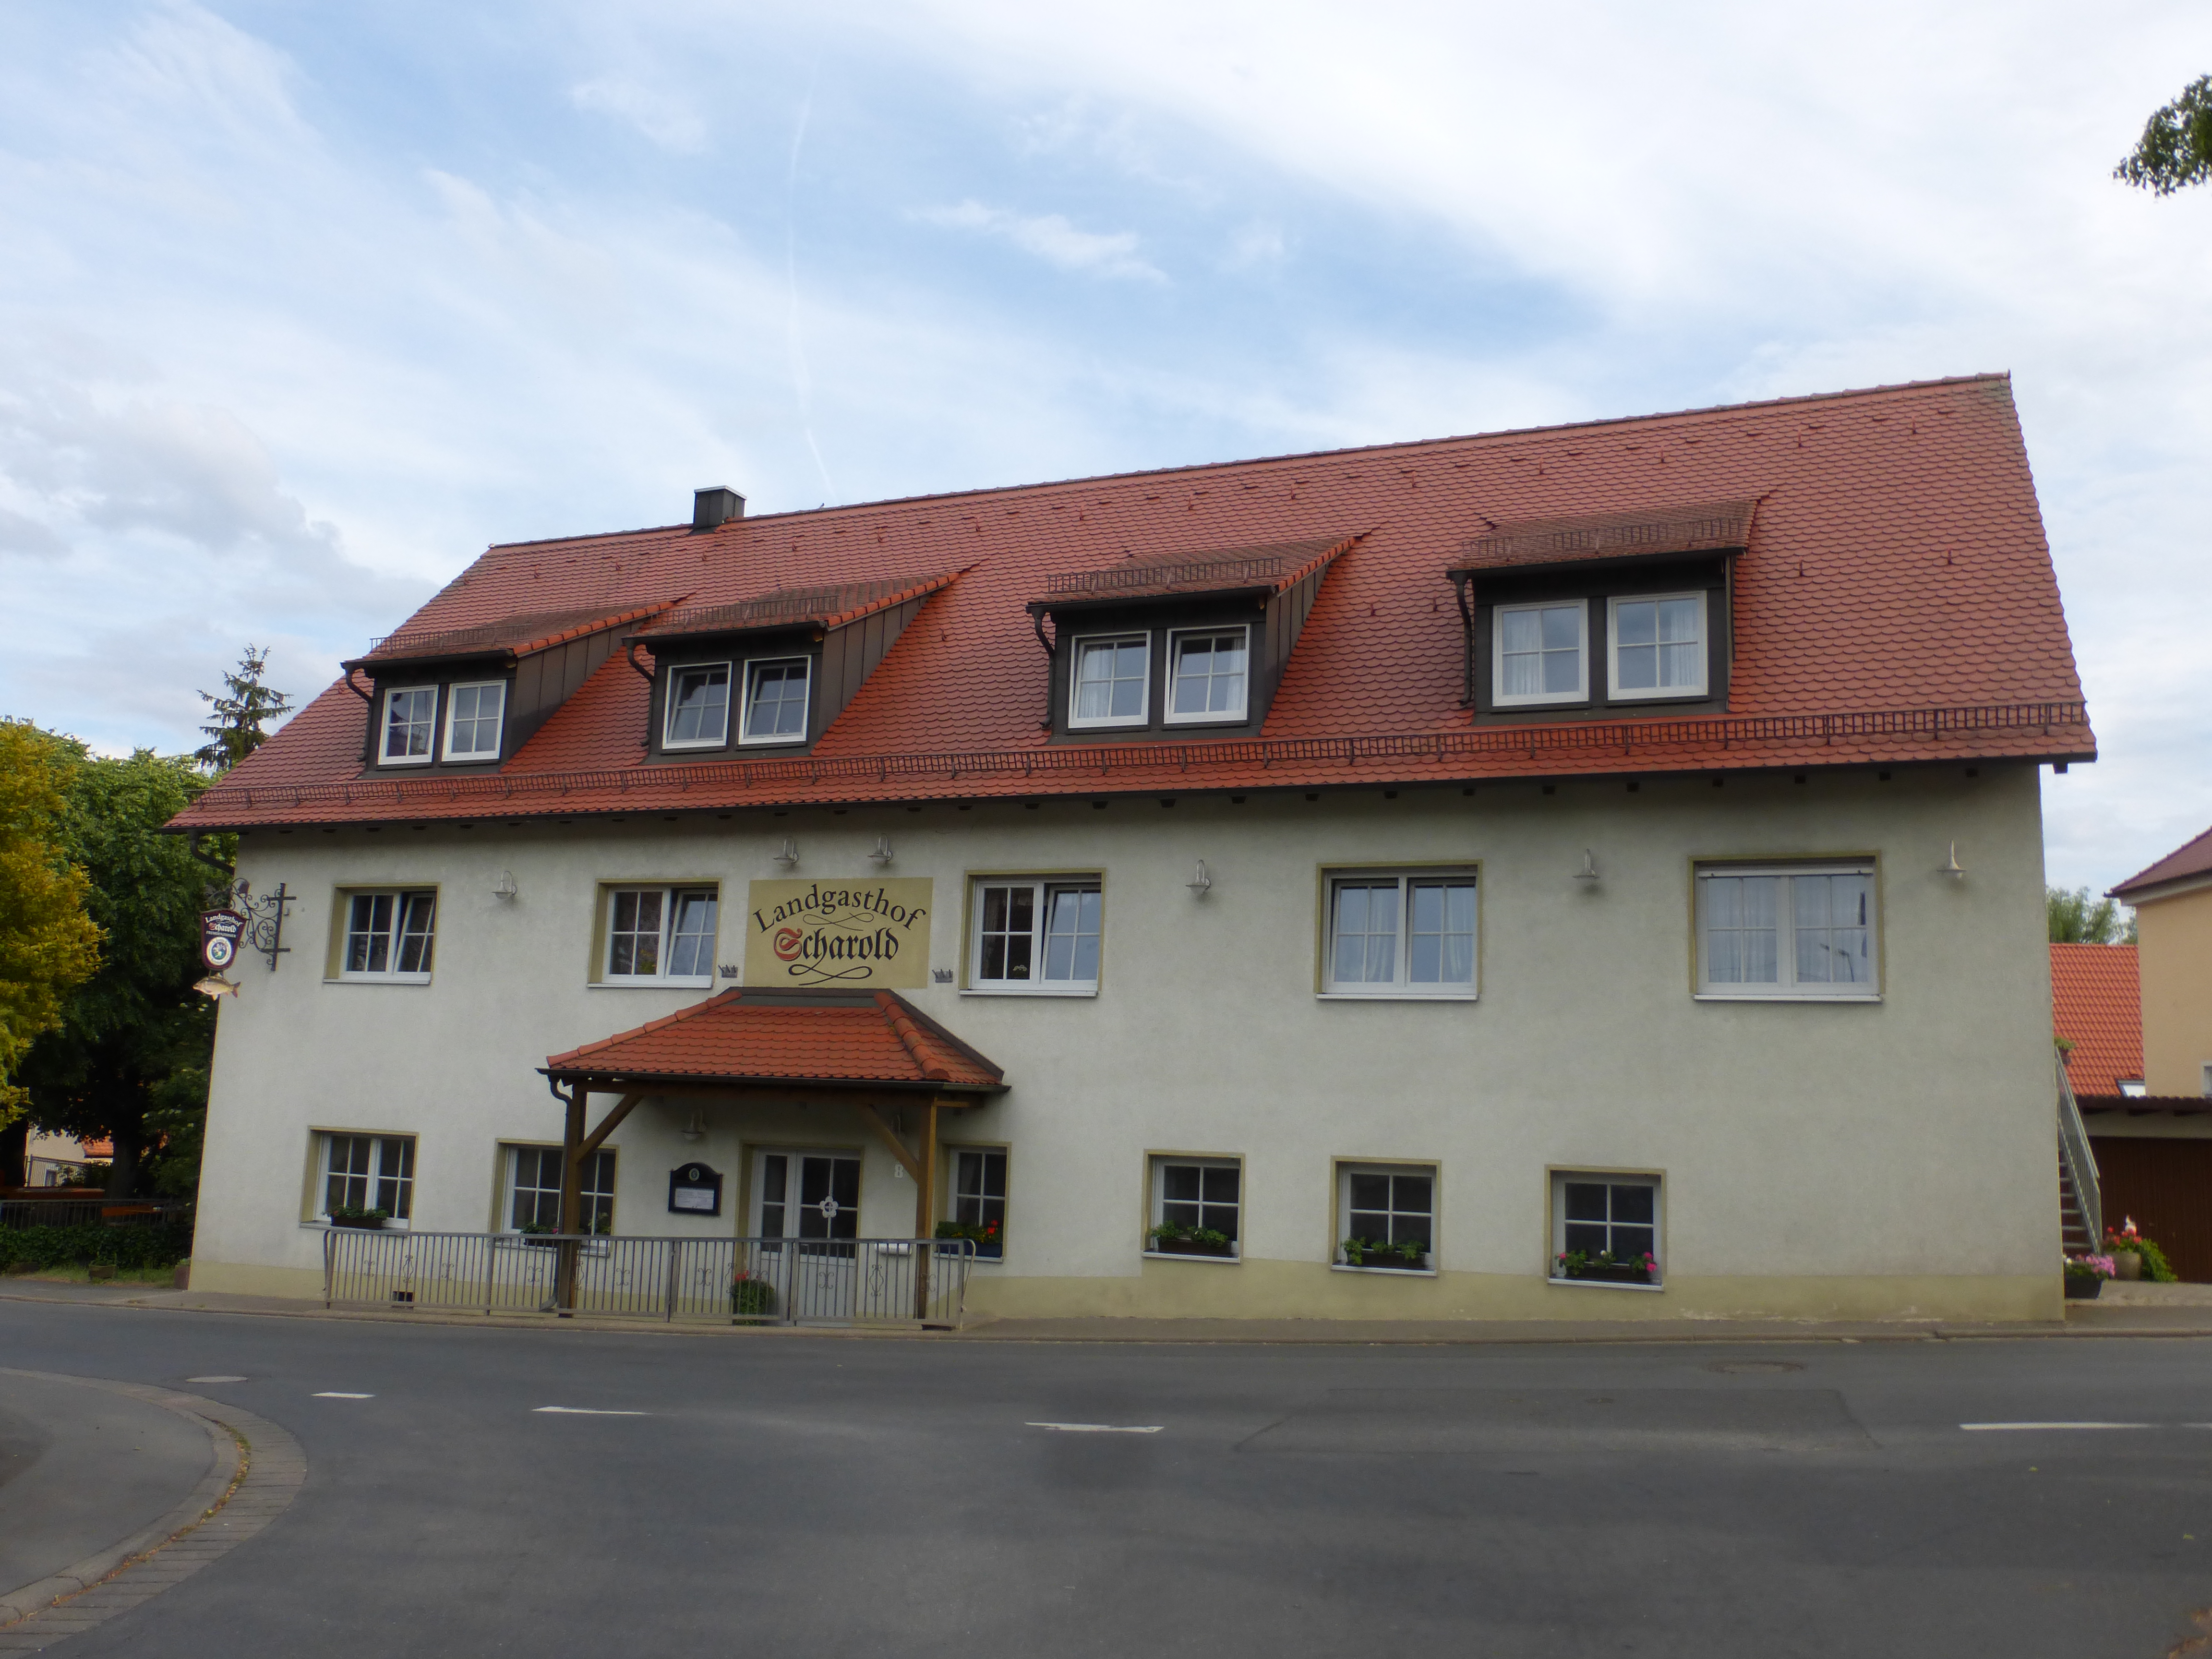 Landgasthof - Gasthaus Scharold Markus
Aischer Hauptstr. 8
91325 Aisch 
 Tel.: 09195/2500